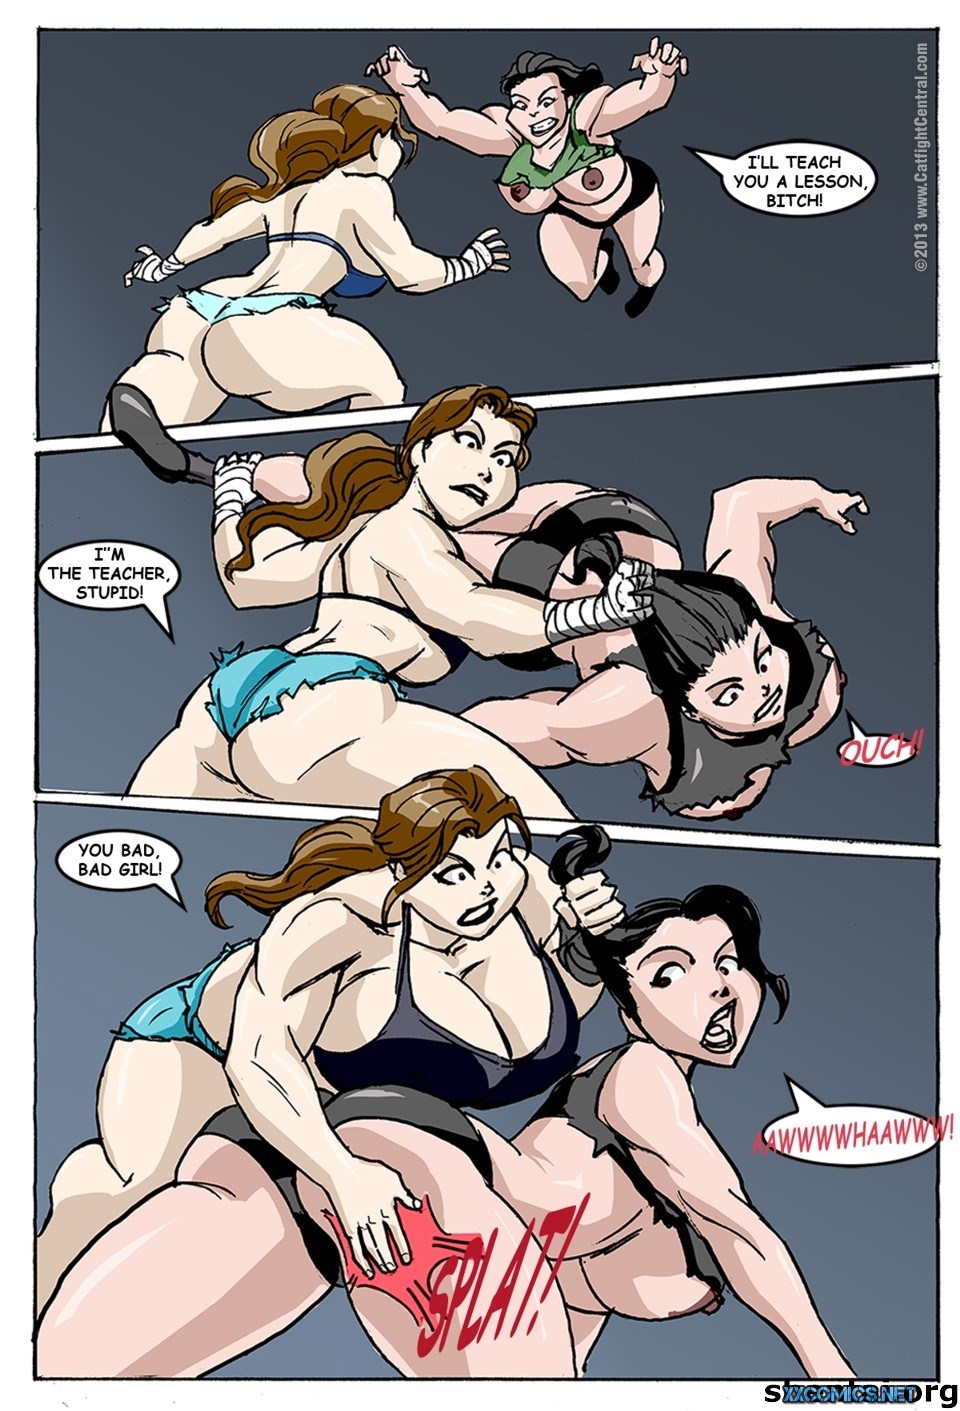 Comics porn catfight wrestling lesbian